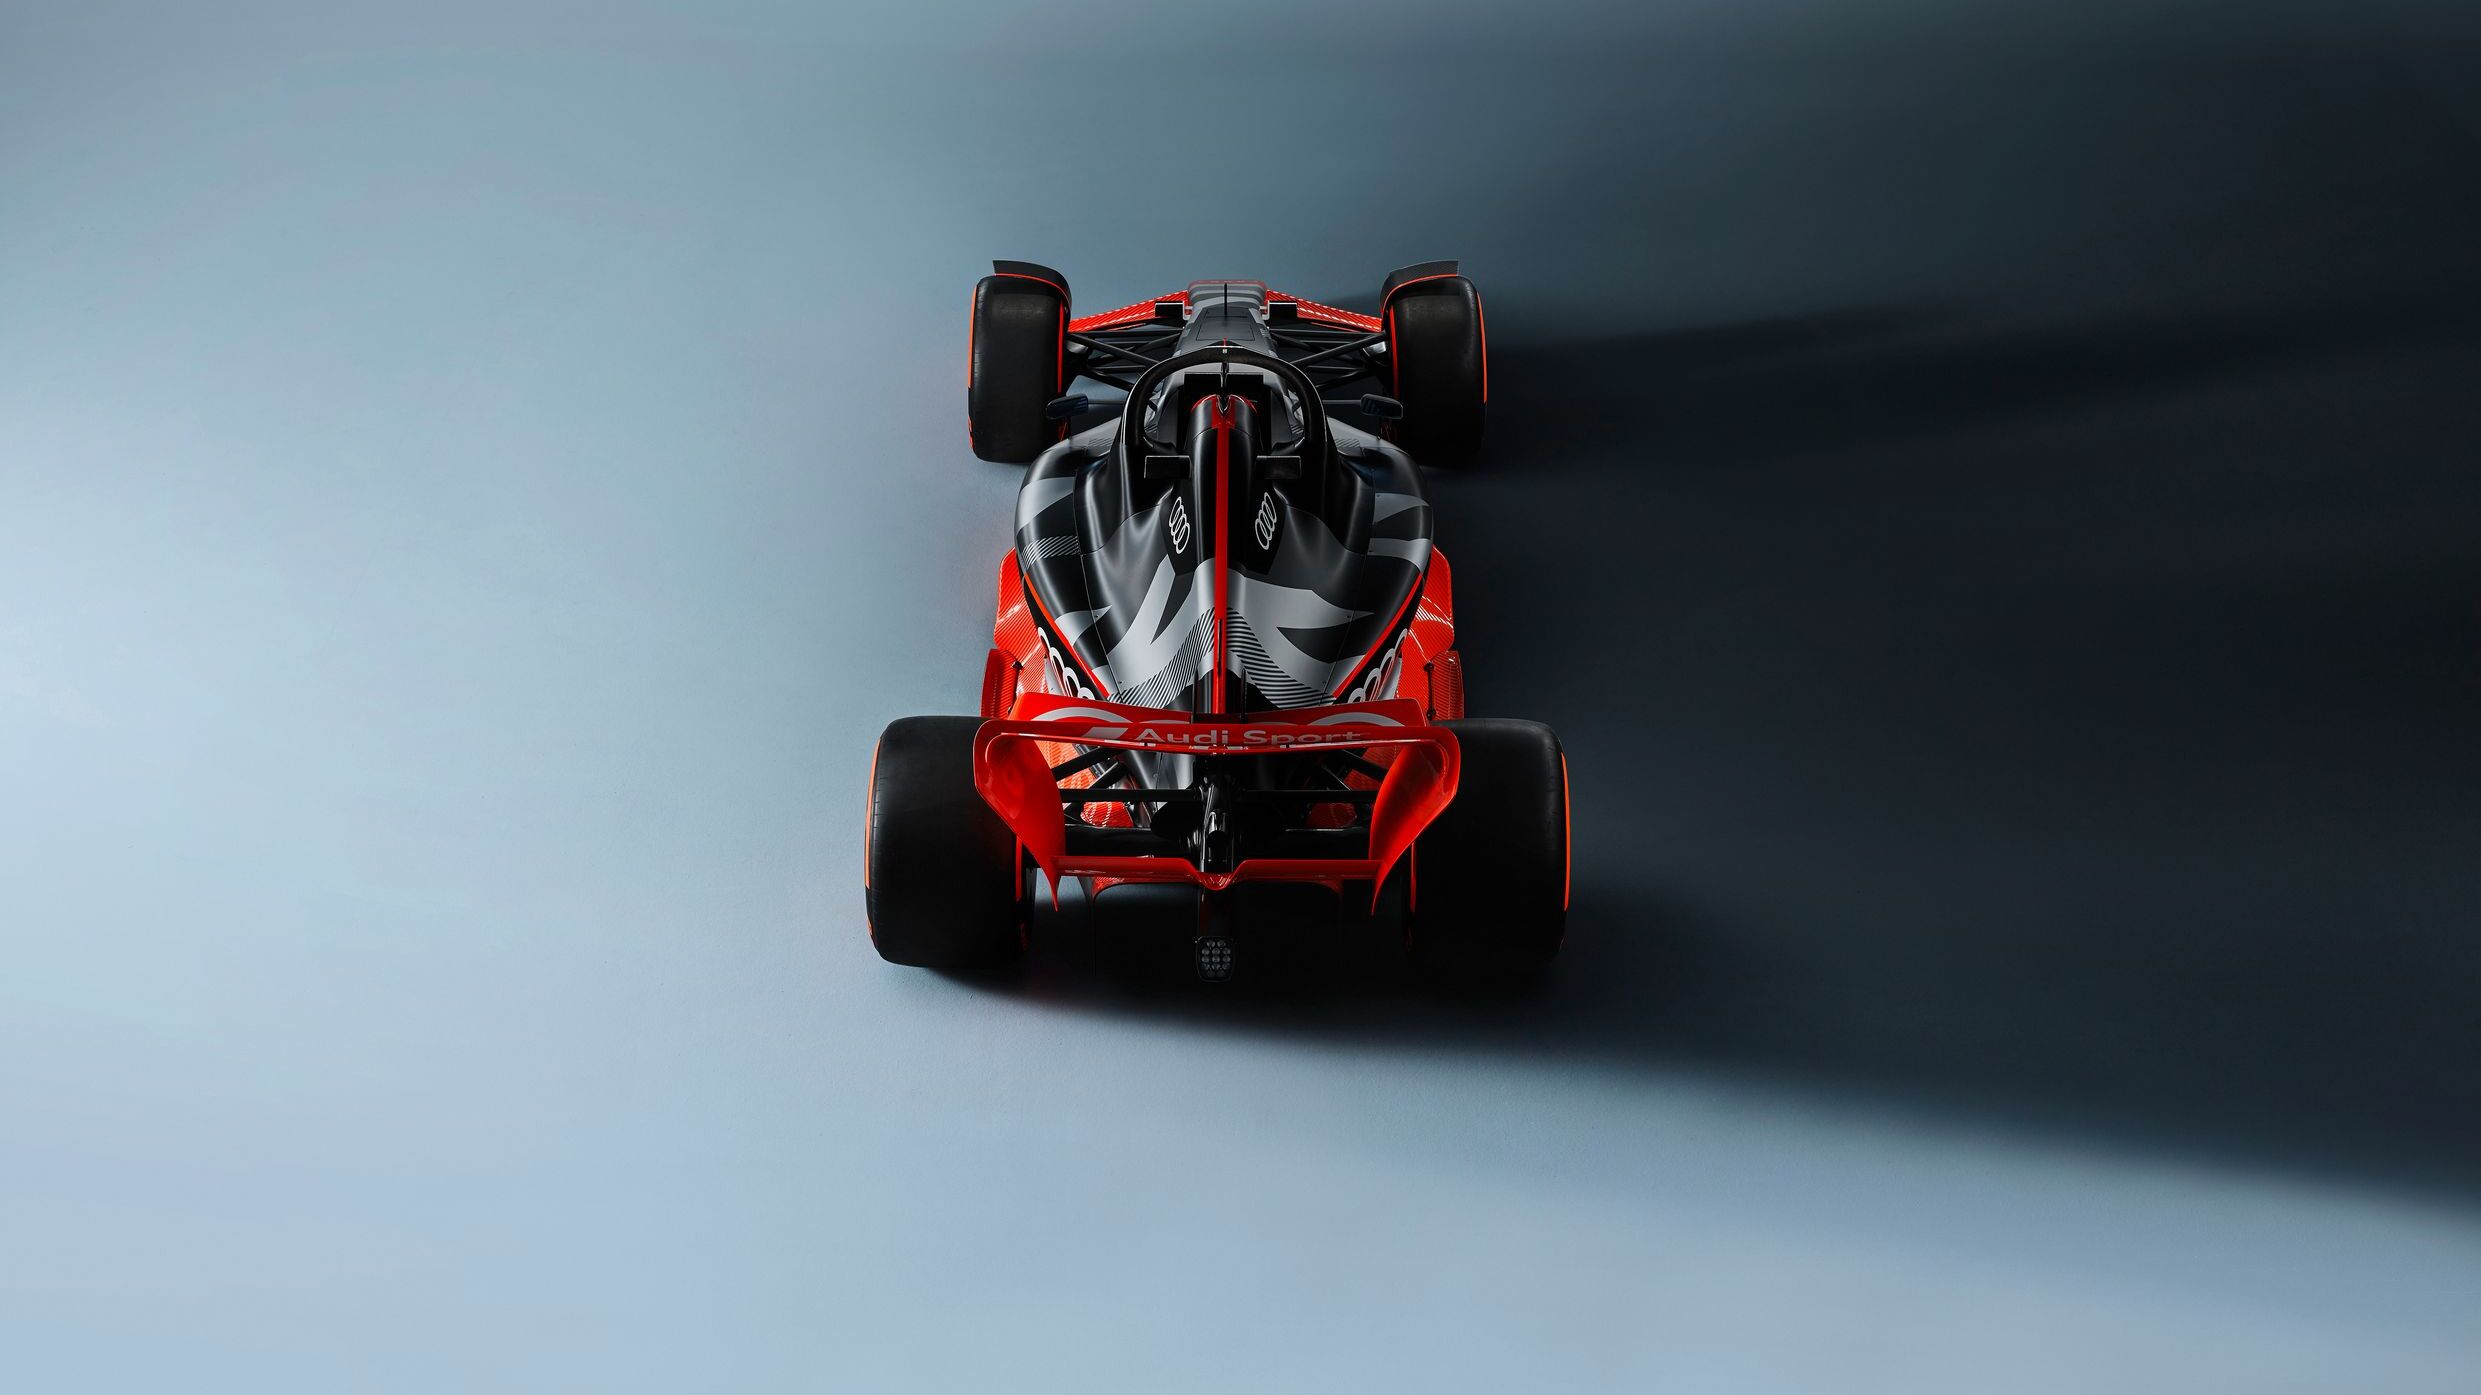 Una monoposto di Formula 1 adattata alla livrea Audi Sport